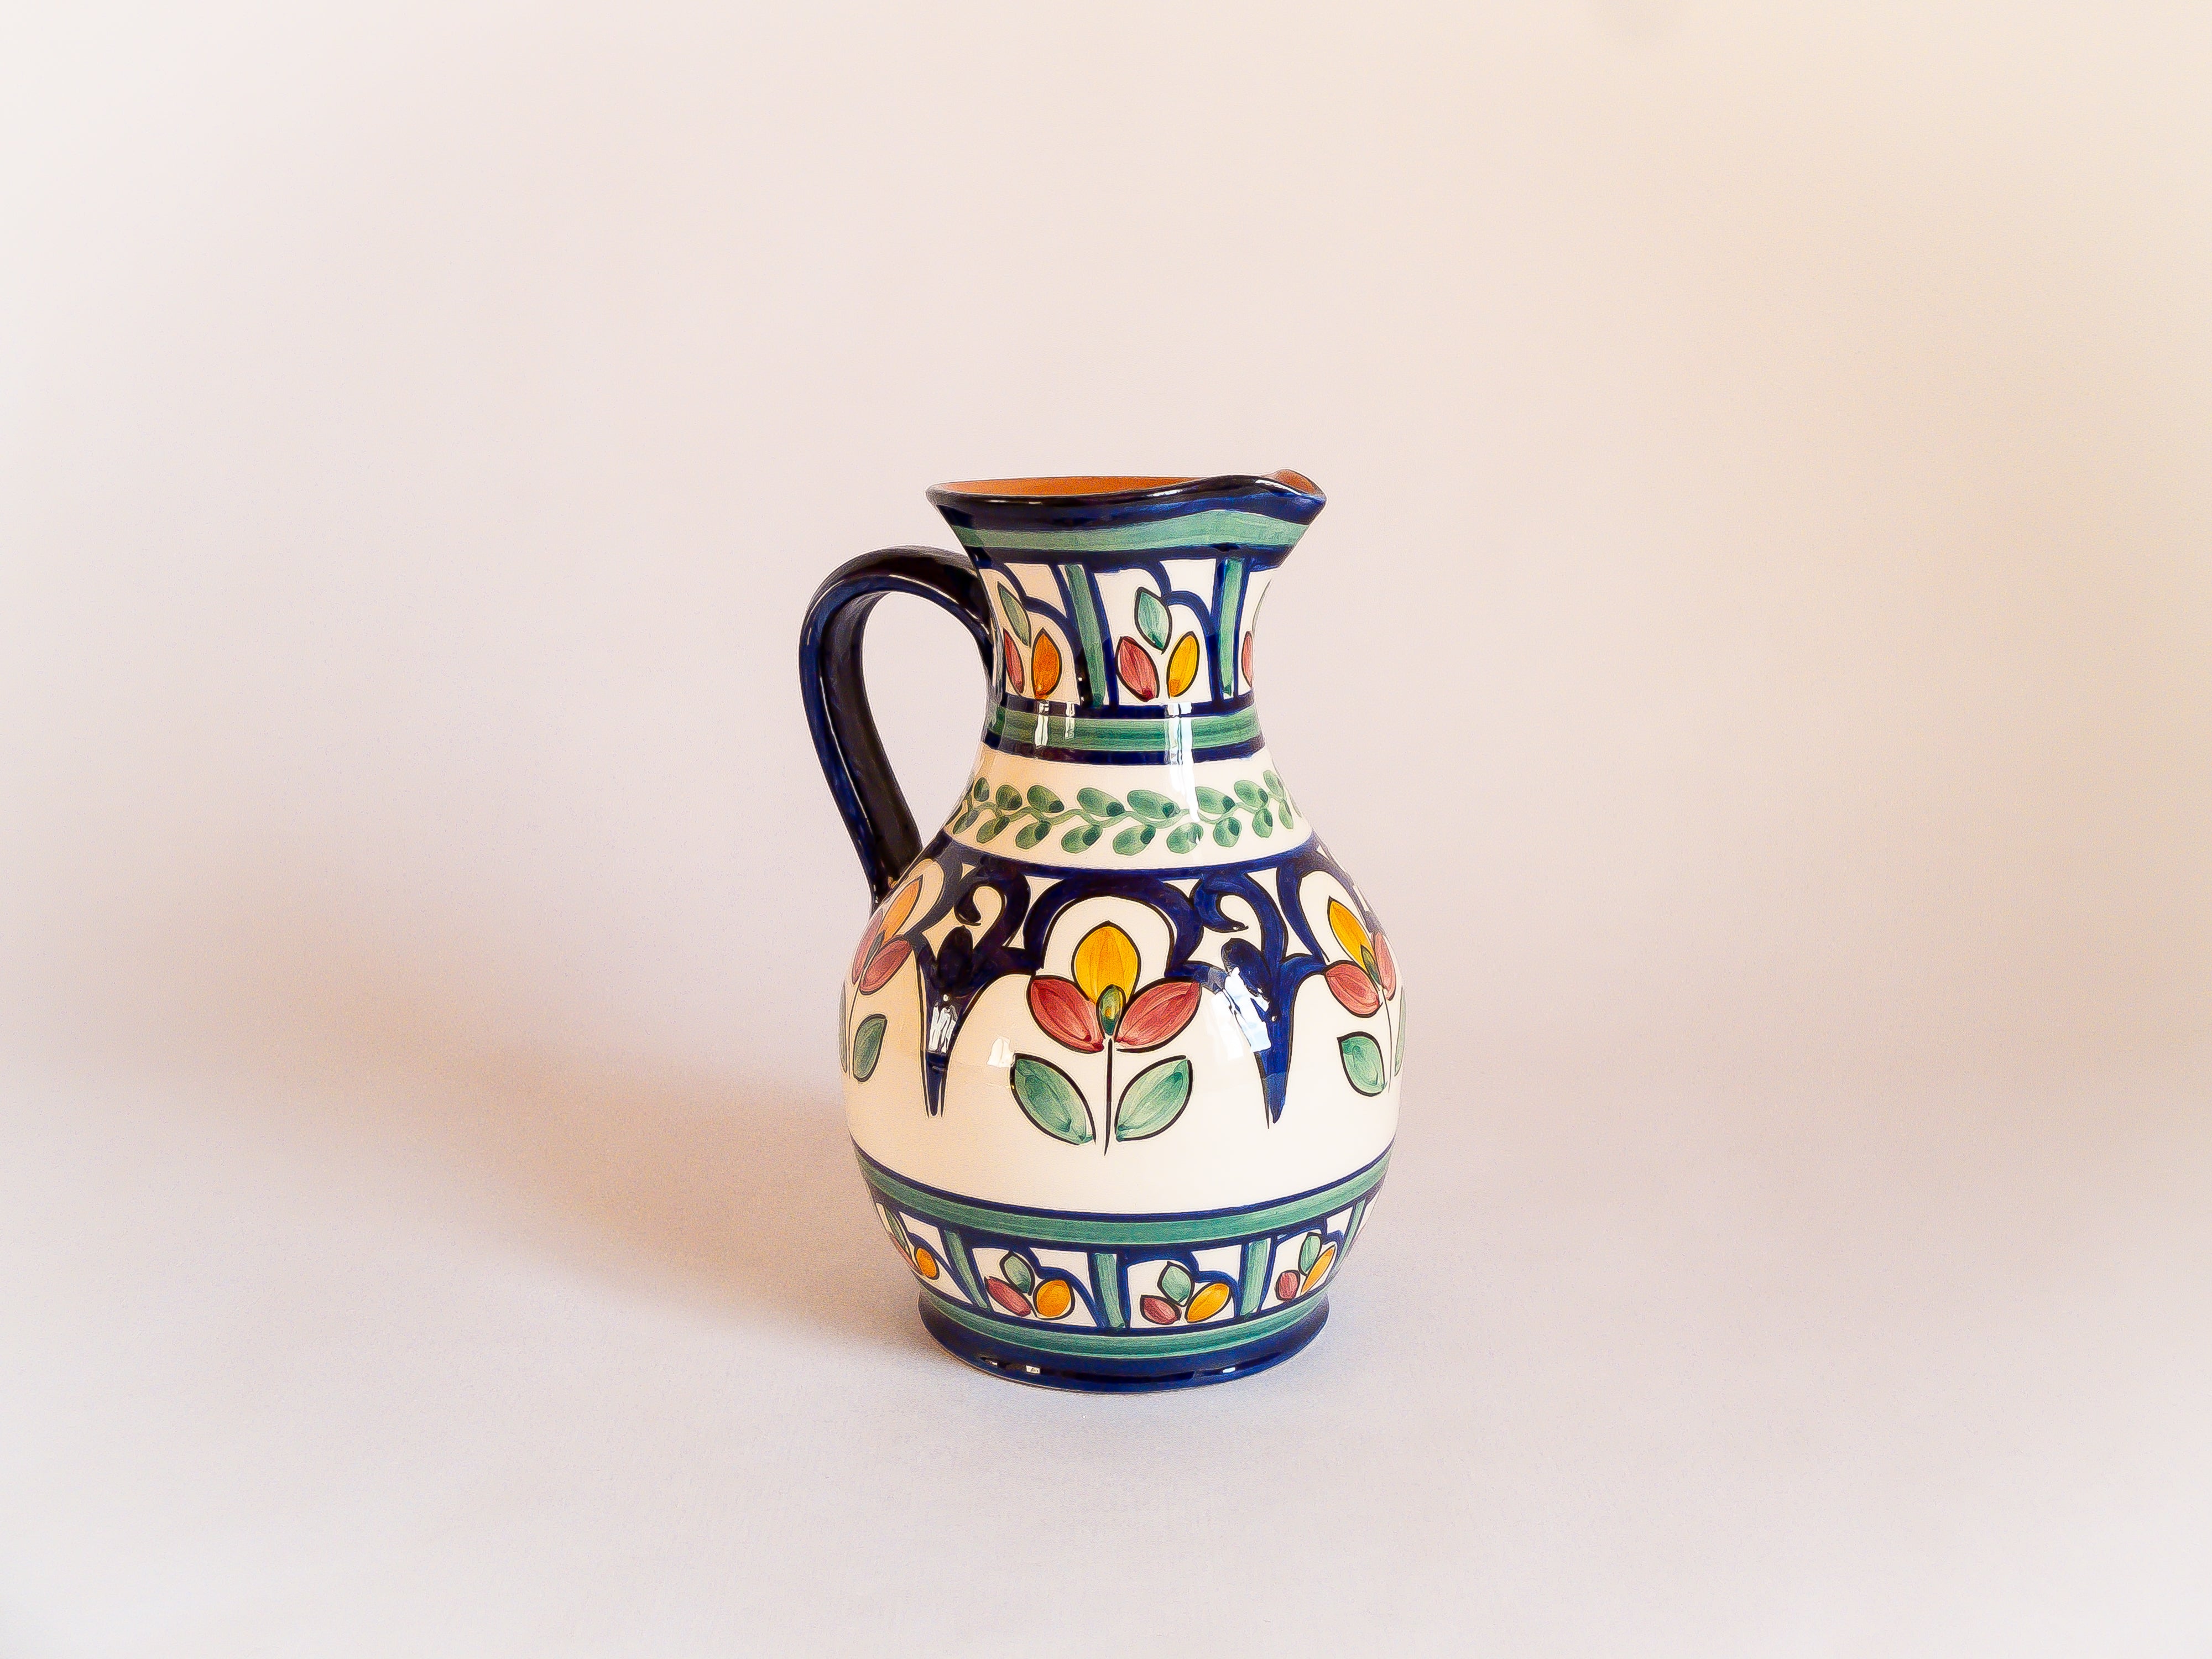 Carafe fabriquée et peinte à la main au Portugal. Contenance 1 litre. Motifs floraux colorés.